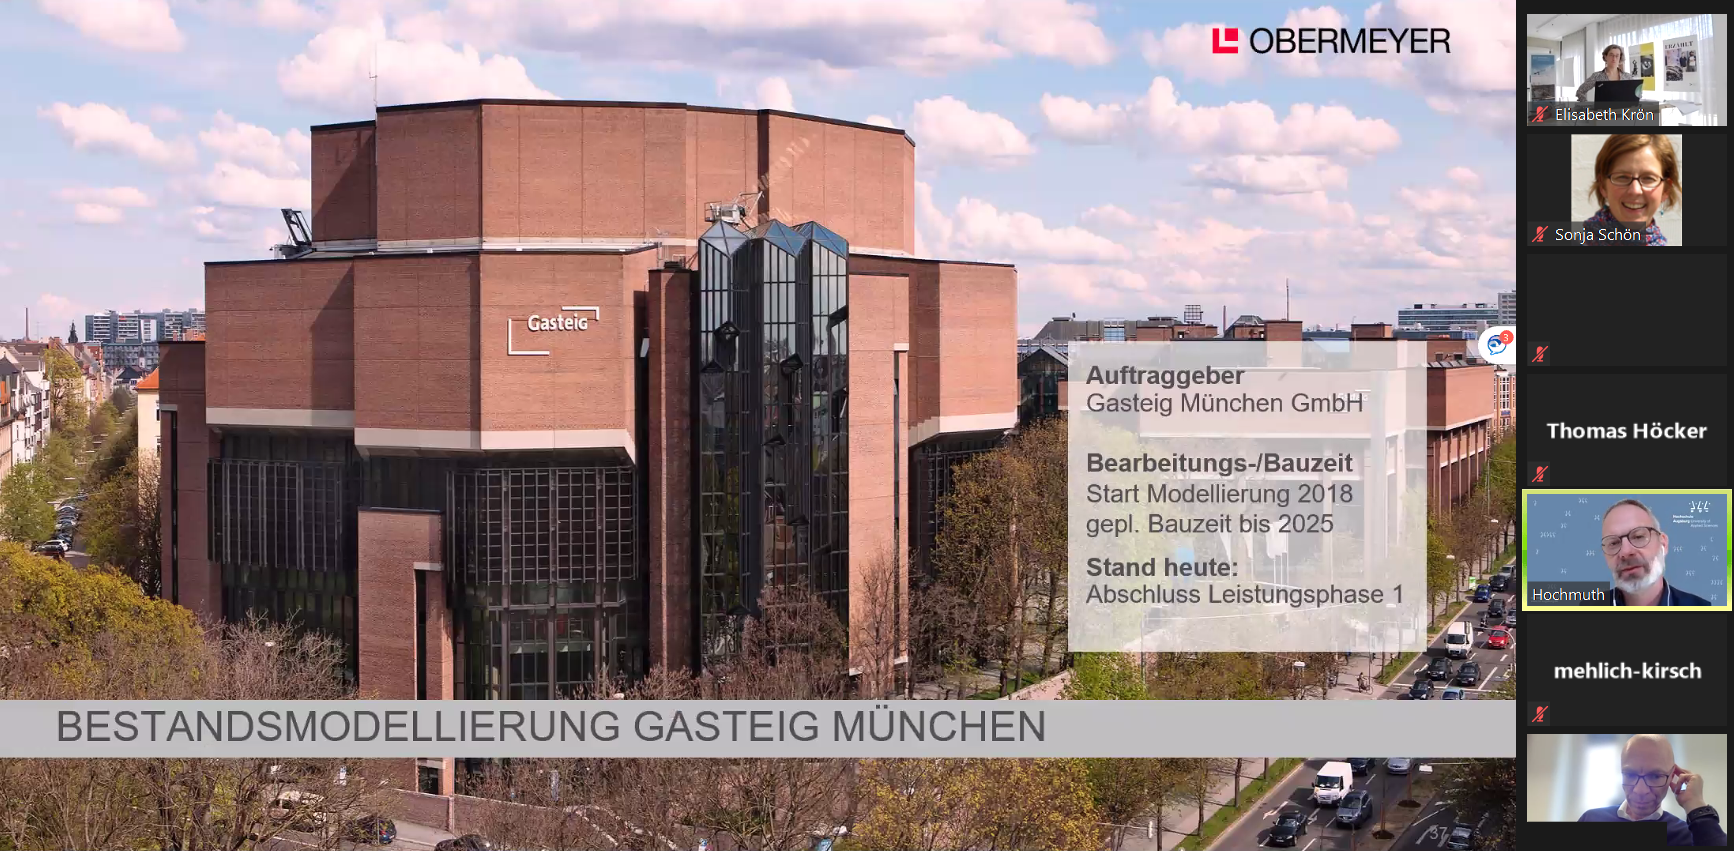 Dass auch der Münchner Gasteig mittlerweile nicht ohne den Einsatz von BIM auskommt, wird von Markus Hochmuth anschaulich erklärt. Screenshot: Sonja Schön.